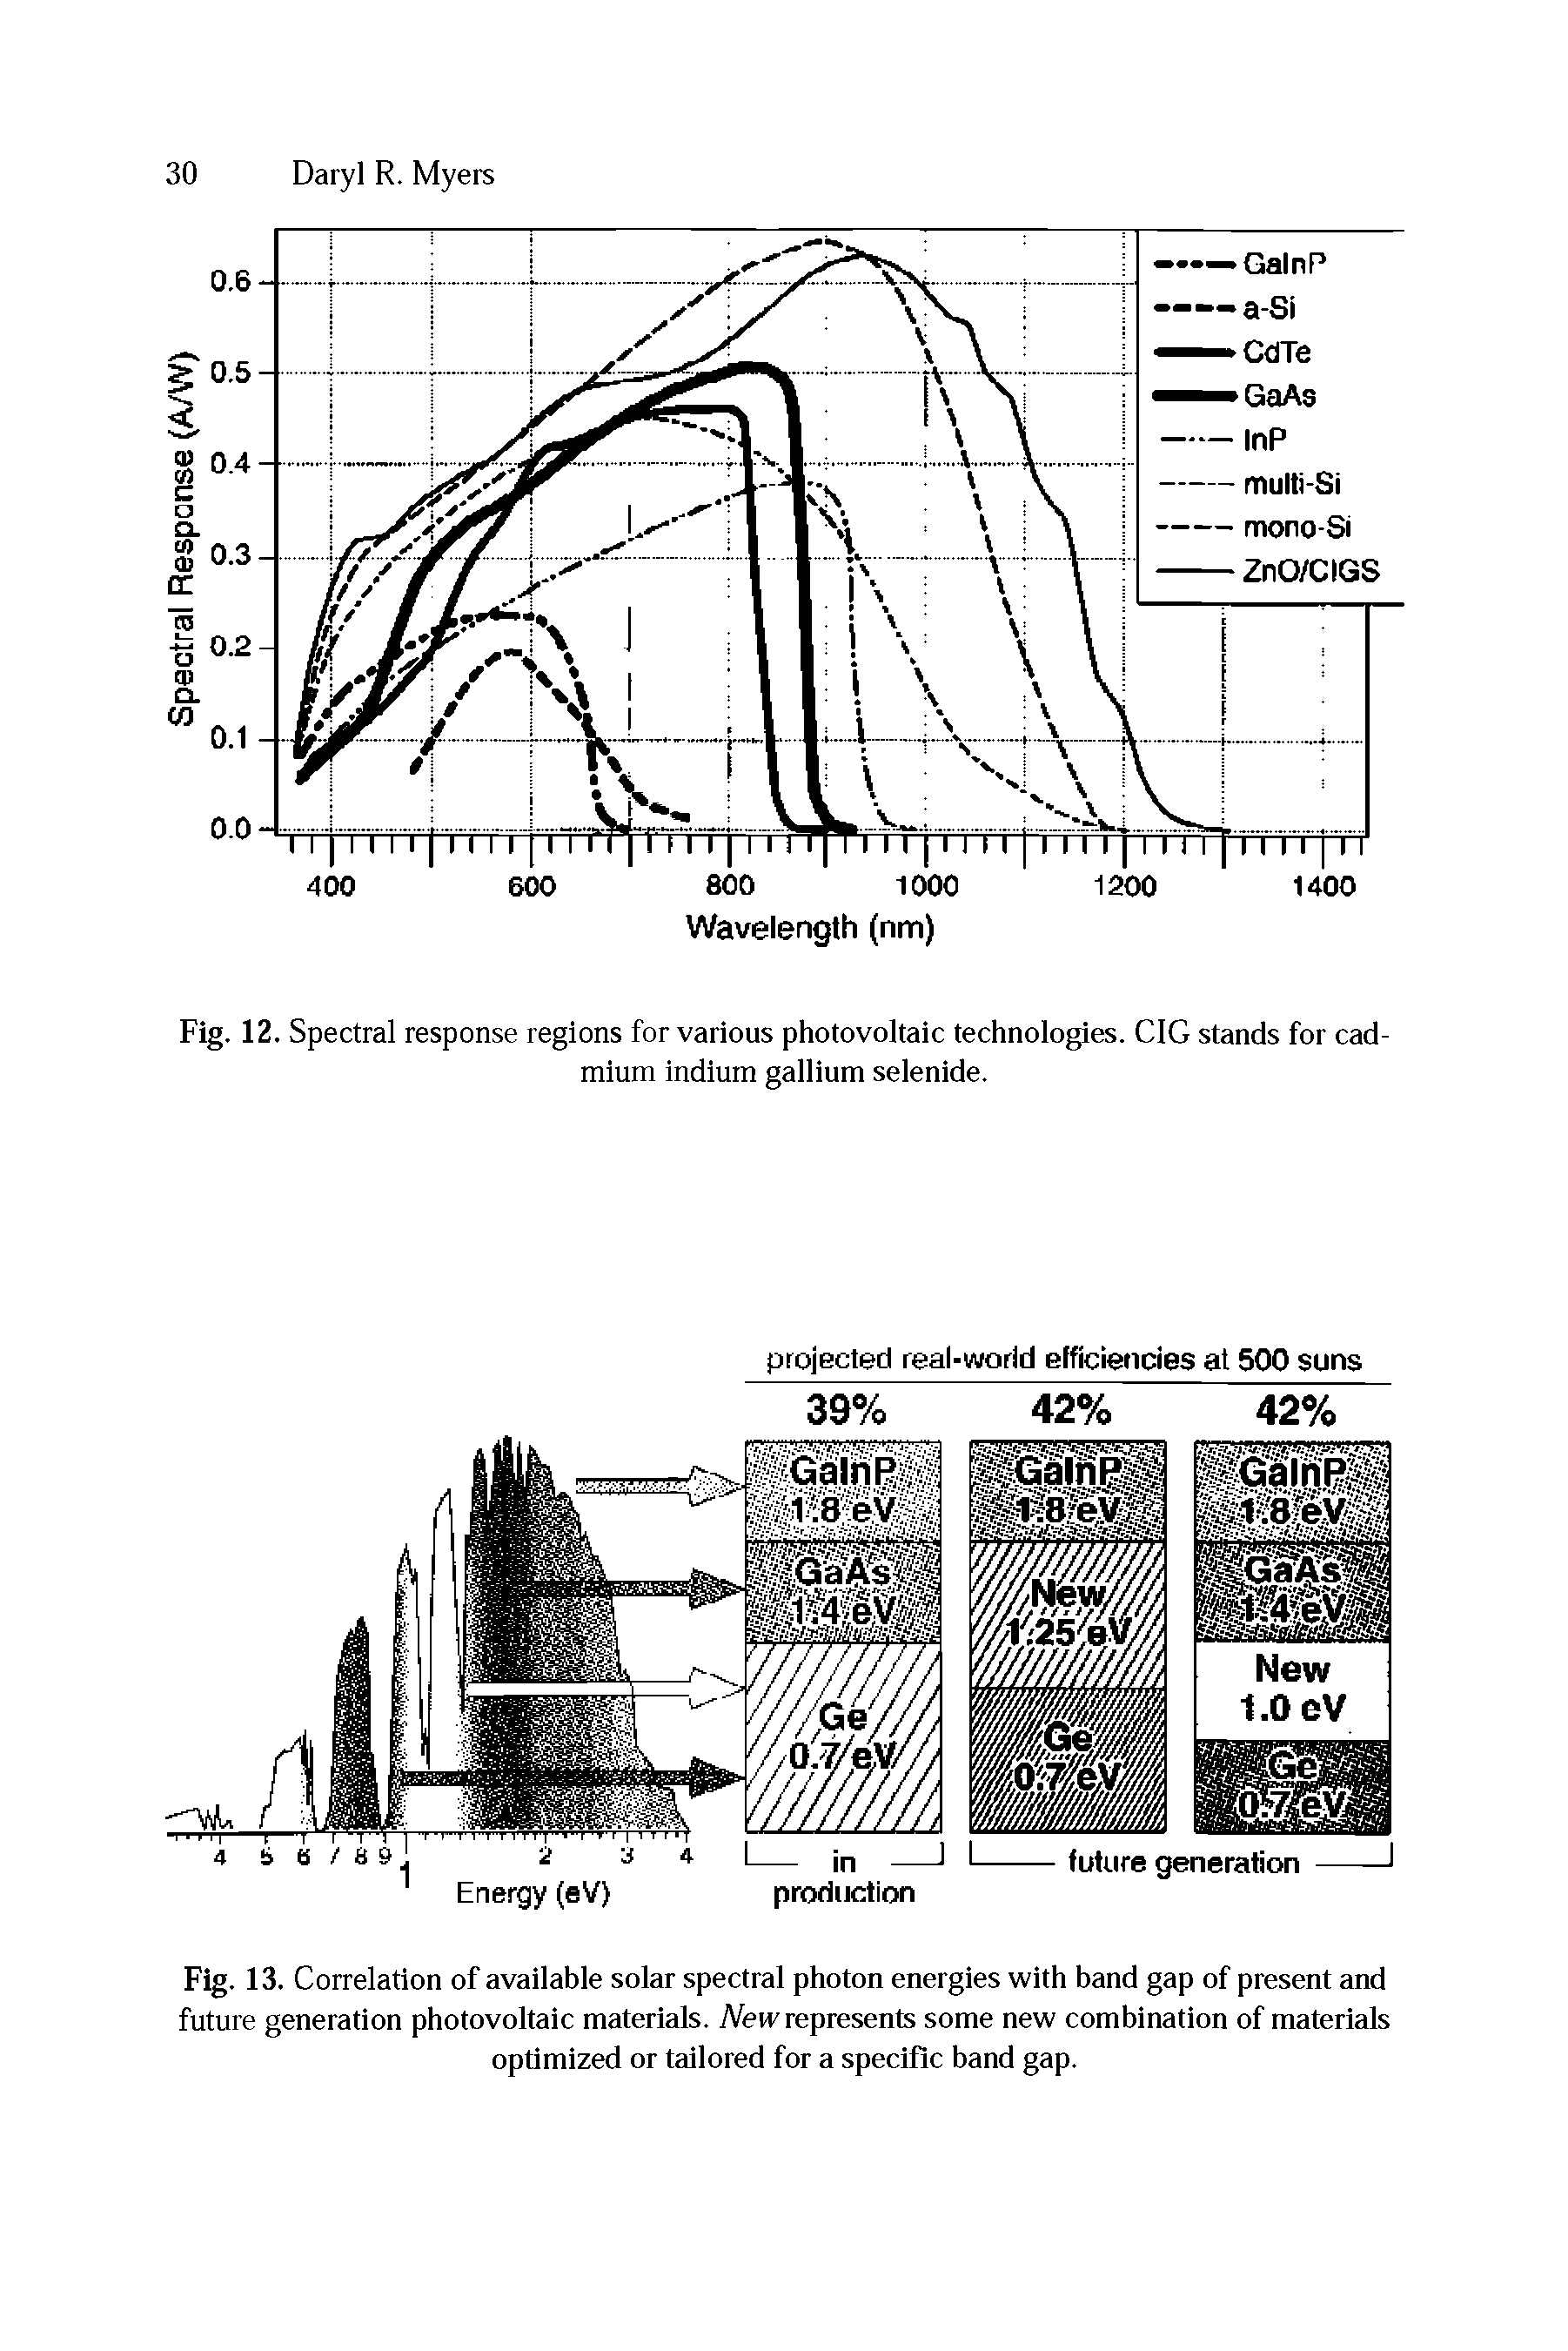 Fig. 12. Spectral response regions for various photovoltaic technologies. CIG stands for cadmium indium gallium selenide.